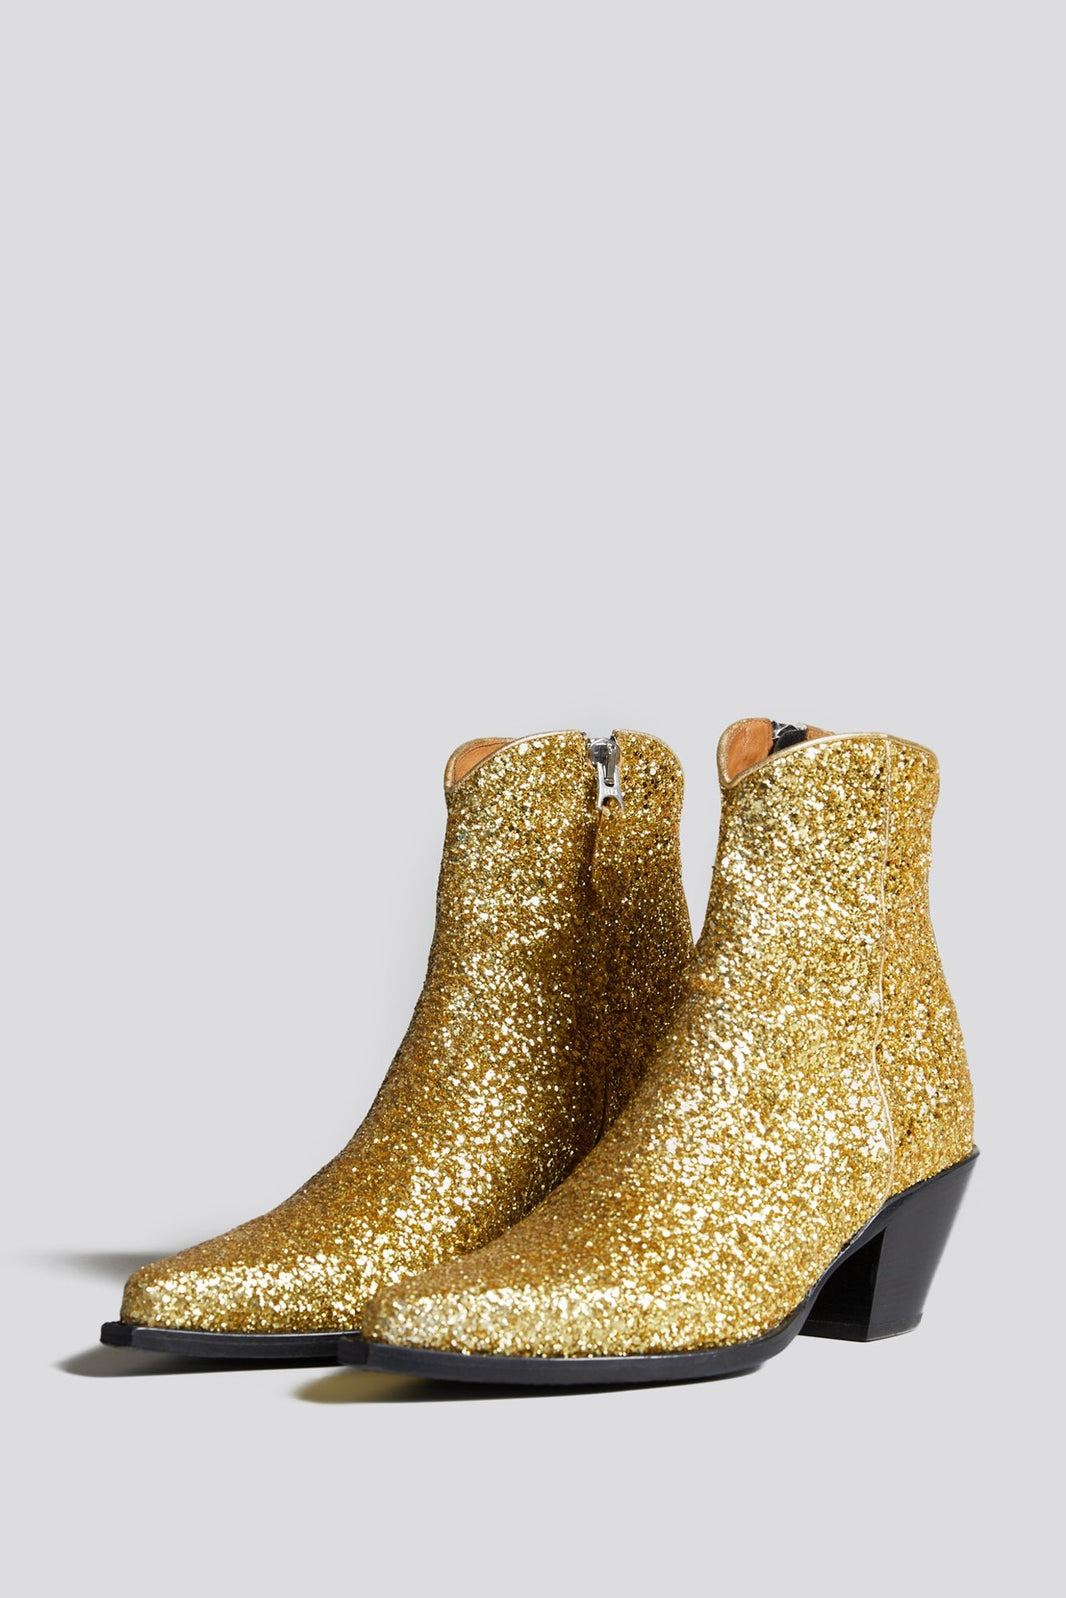 Women's Boots | R13 Denim Official Site